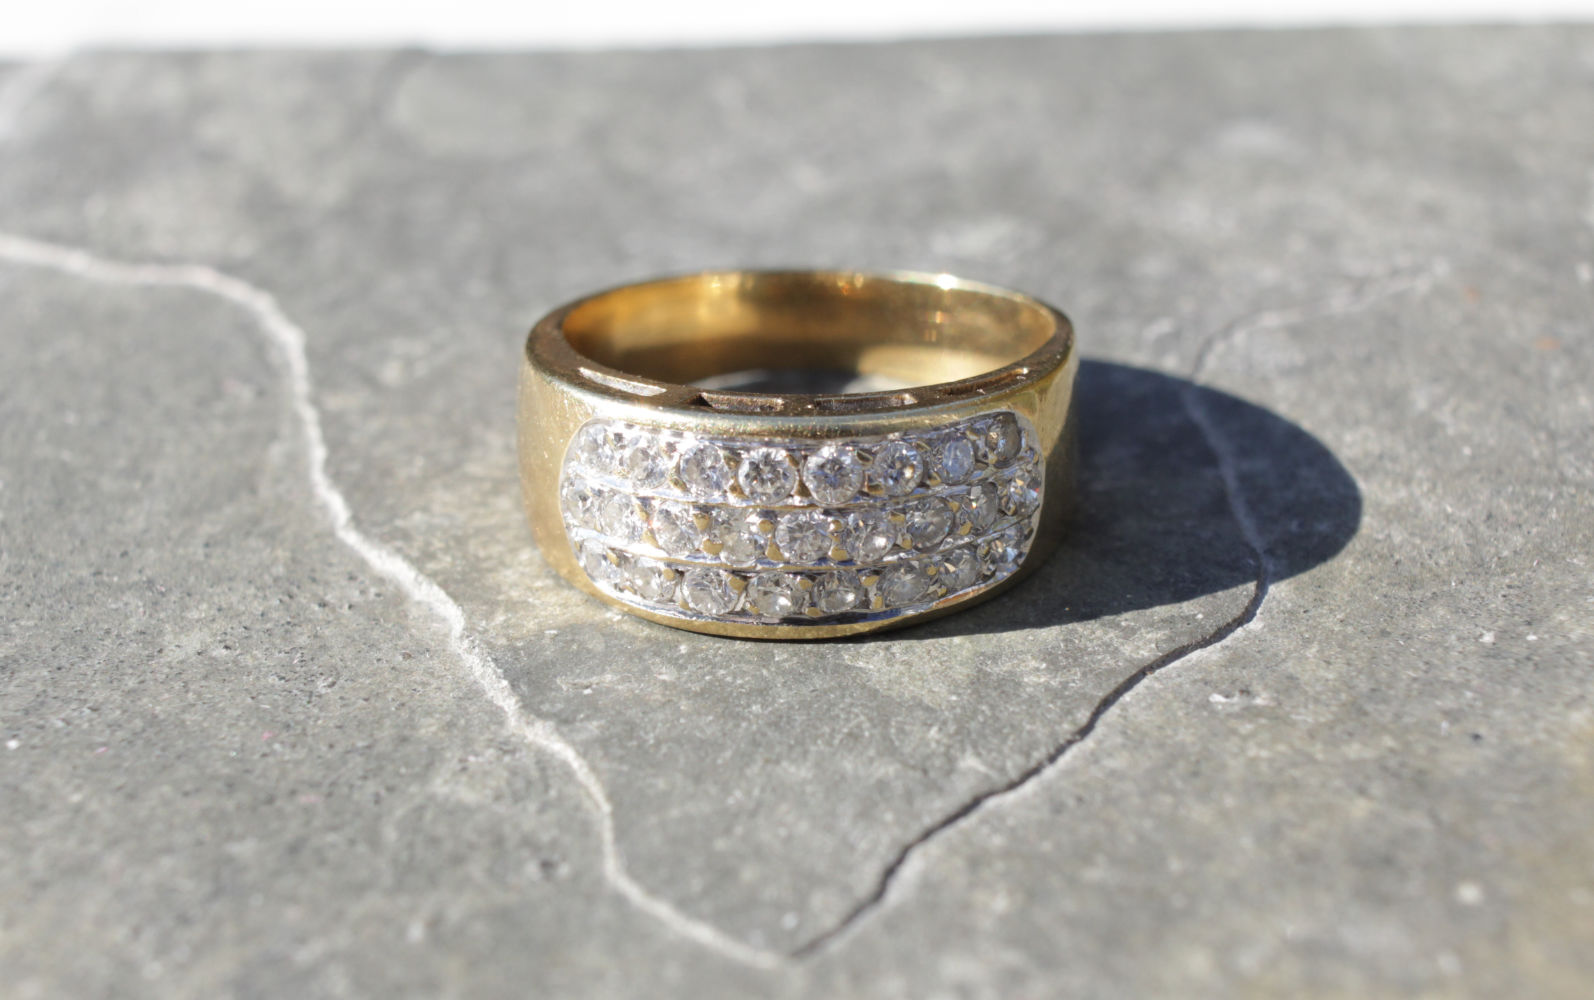 Vintage Ring mit Diamanten, welche in 3 Reihen angelegt sind, aus 585er Gold, Frontalansicht.